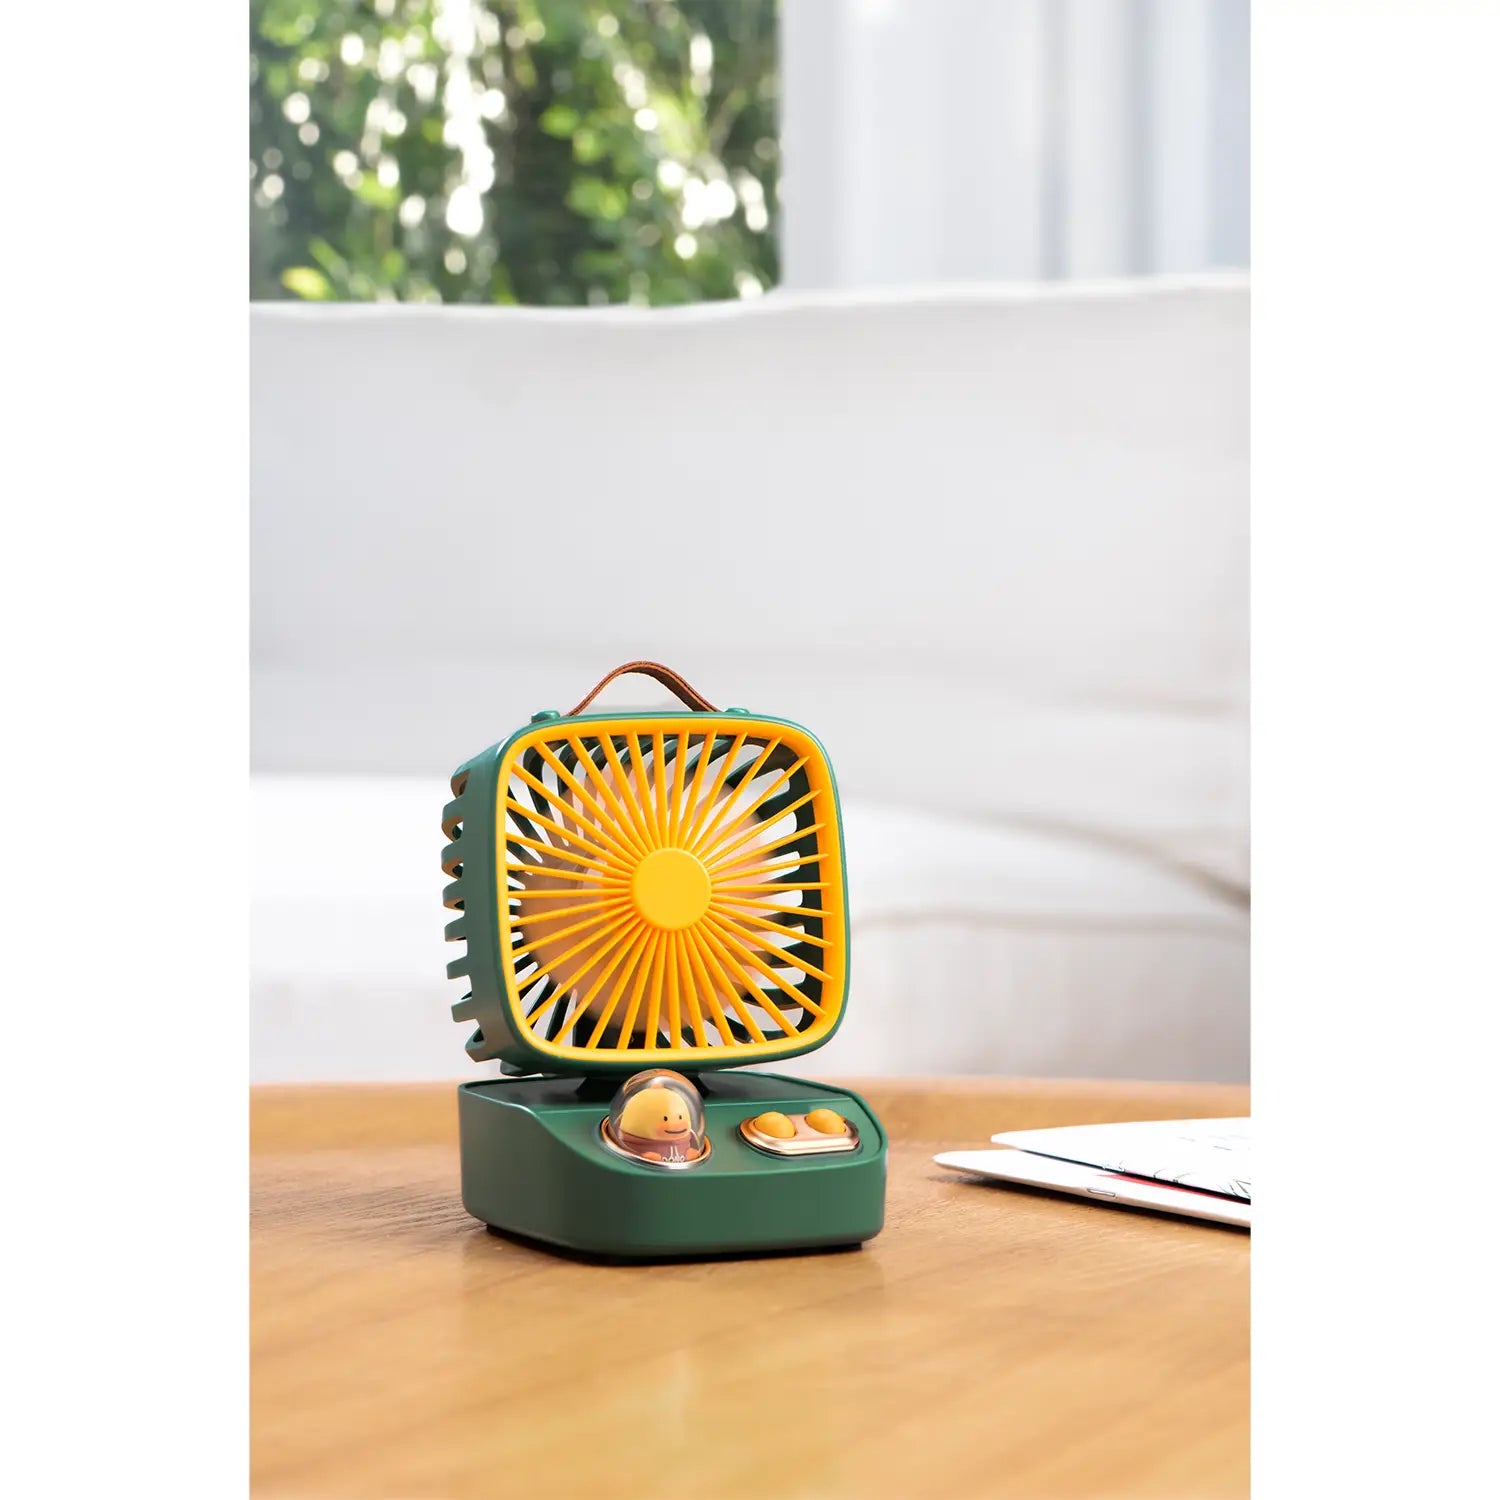 iCarer Family® Modern & Cute Desktop Moving Head Fan Portable USB Mini Cooling Fan 3-Speed With Build-In Fragrance Sheet